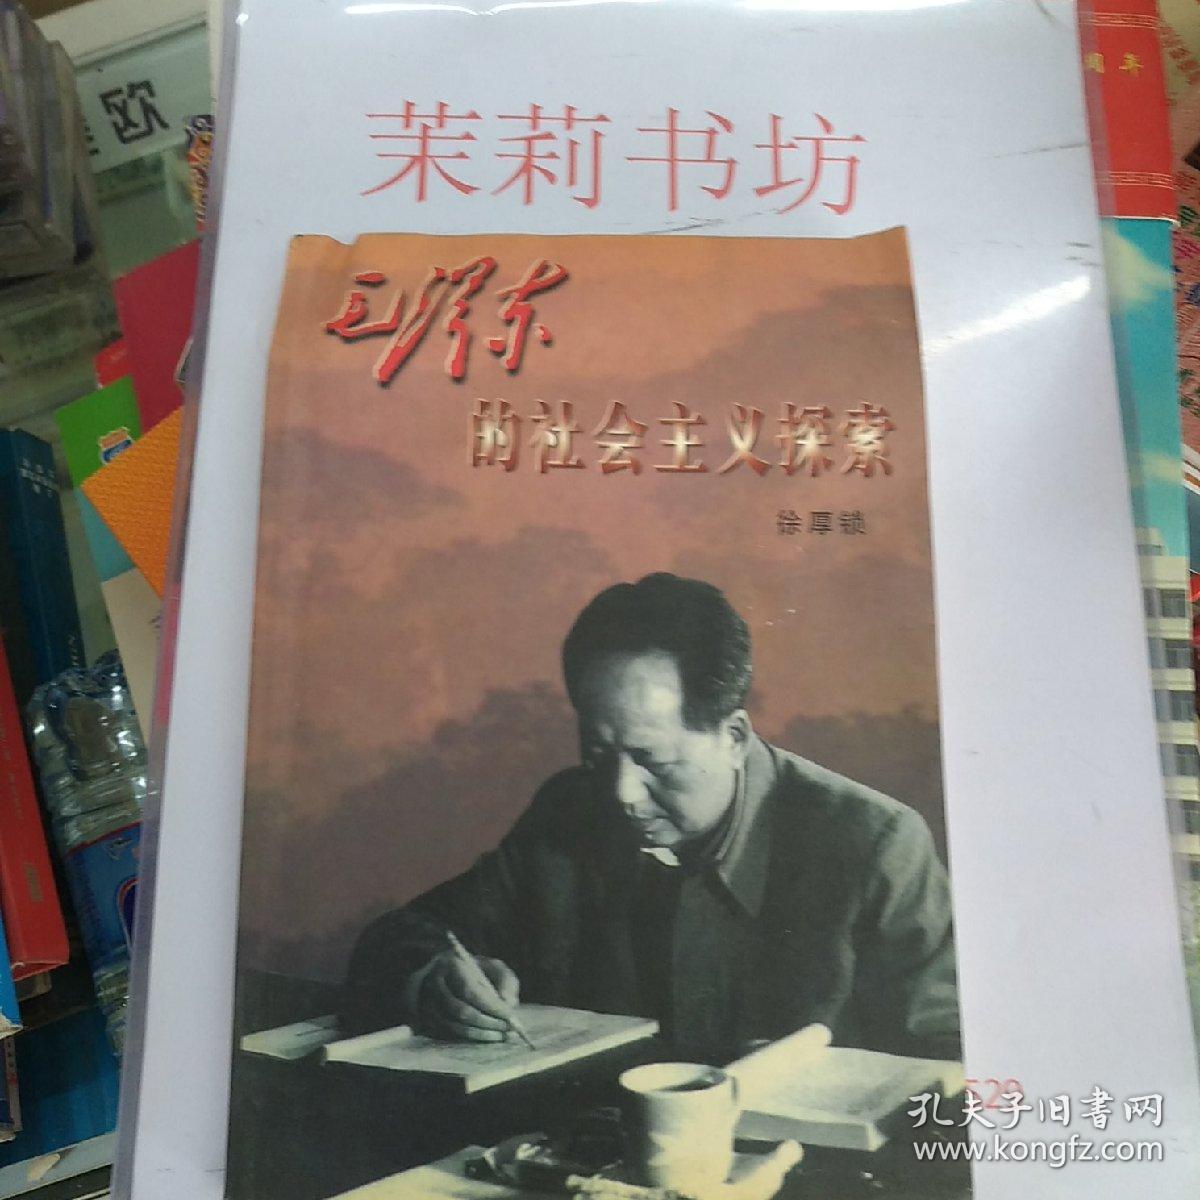 毛泽东的社会主义探索